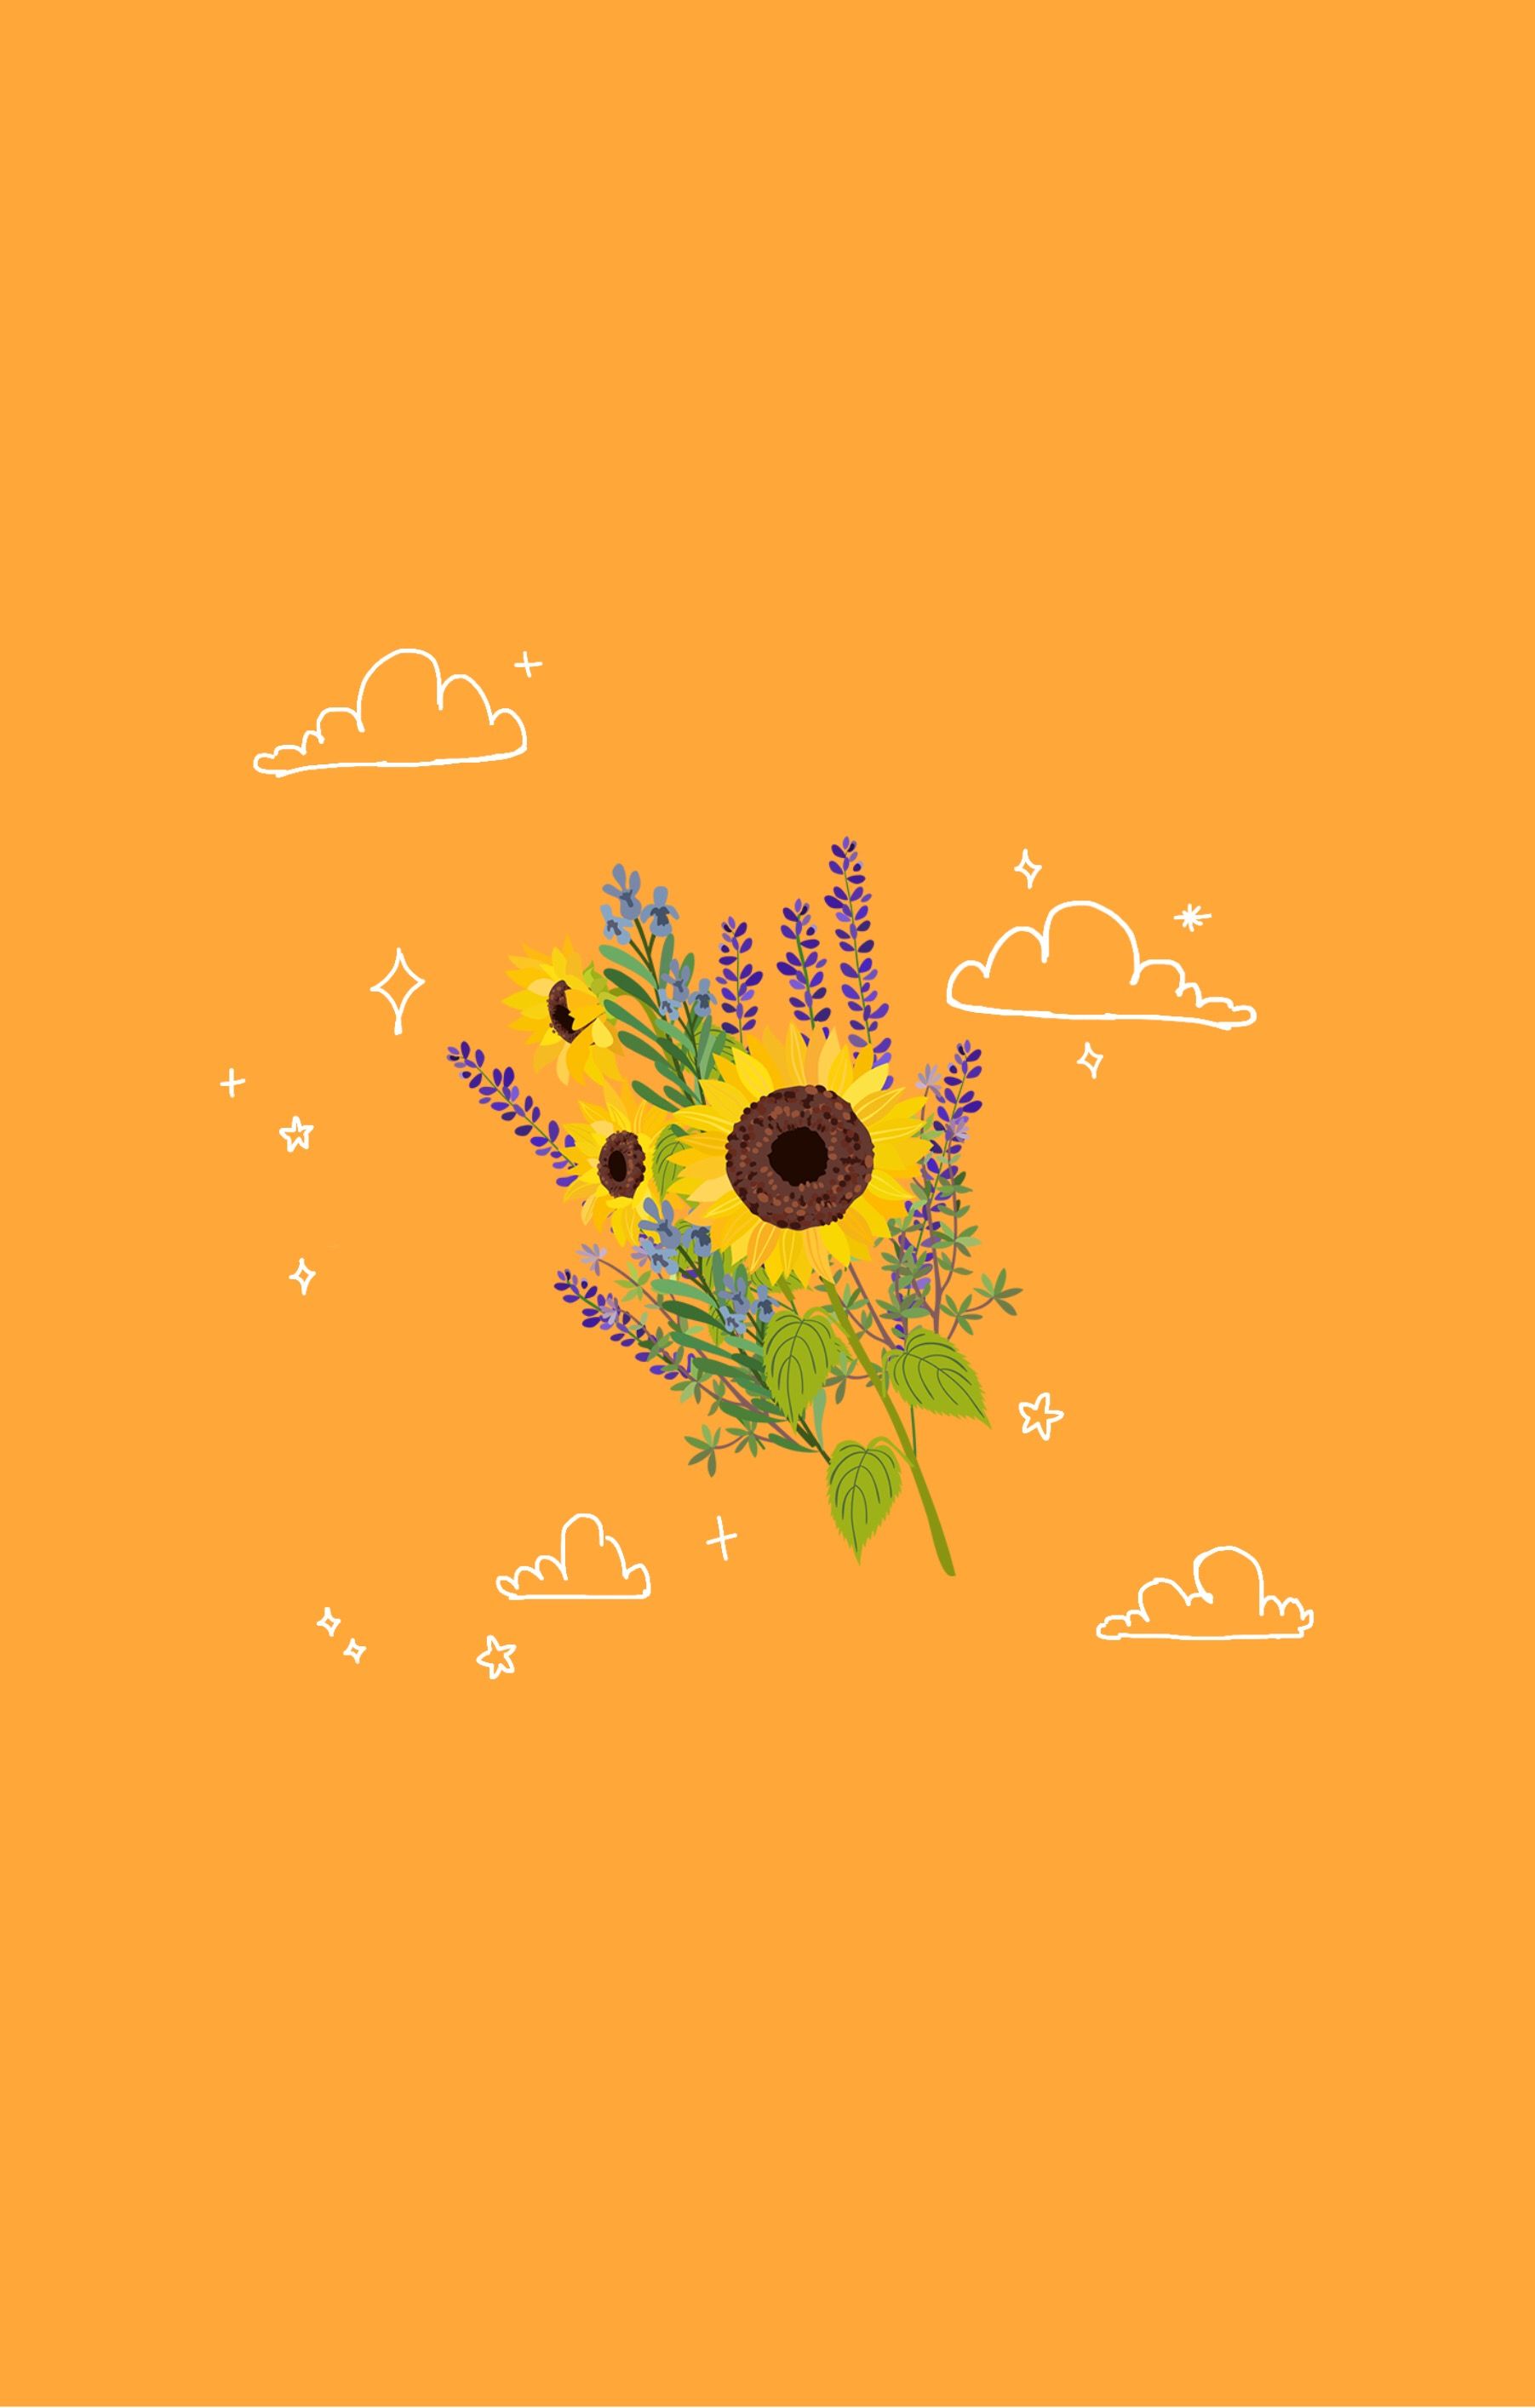 sunflower yellow mustard aesthetic Image